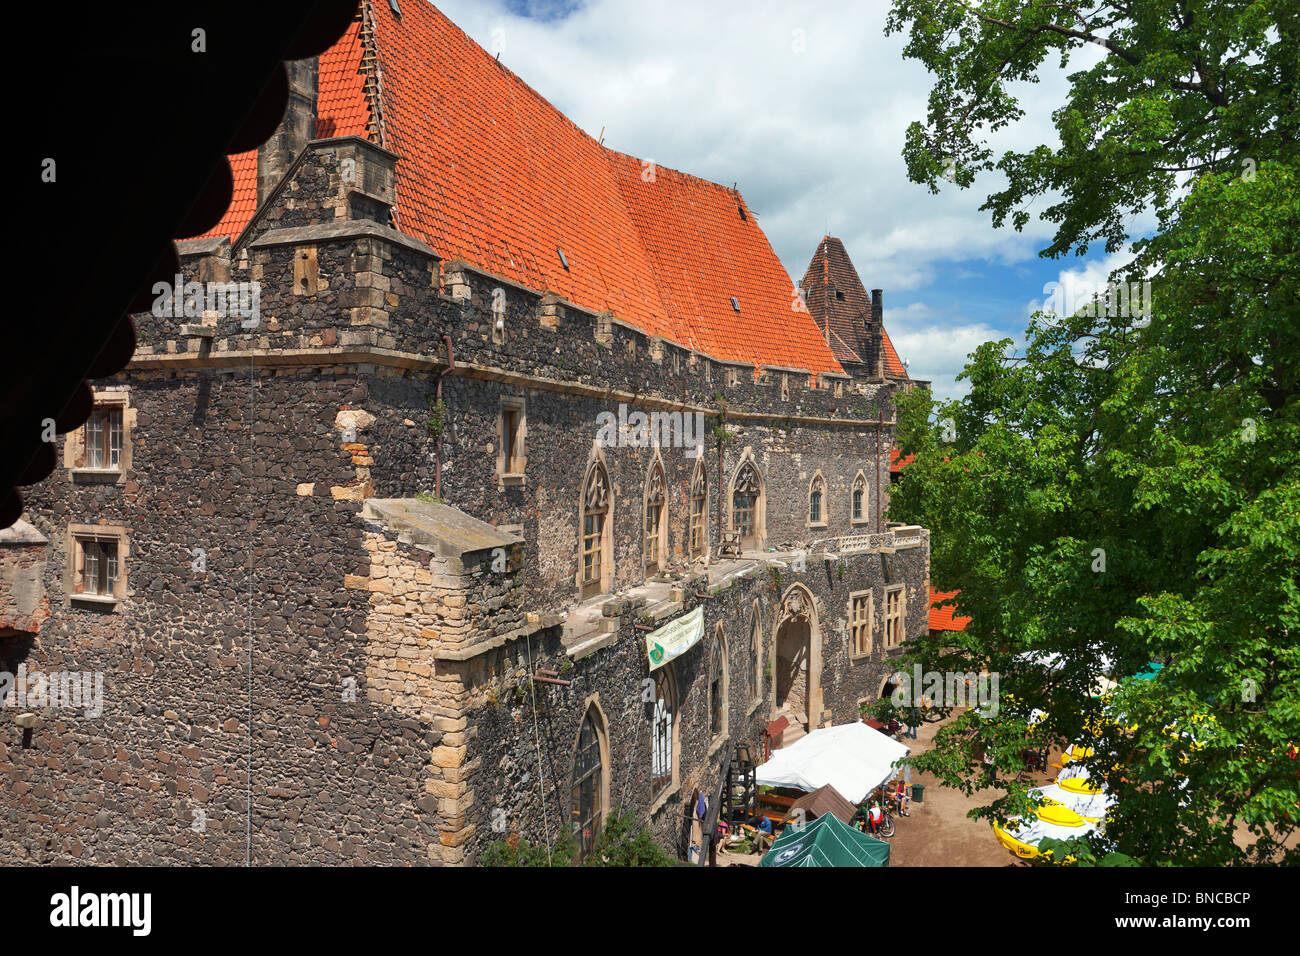 Grodziec - resti del castello medievale, Slesia, Polonia Foto Stock